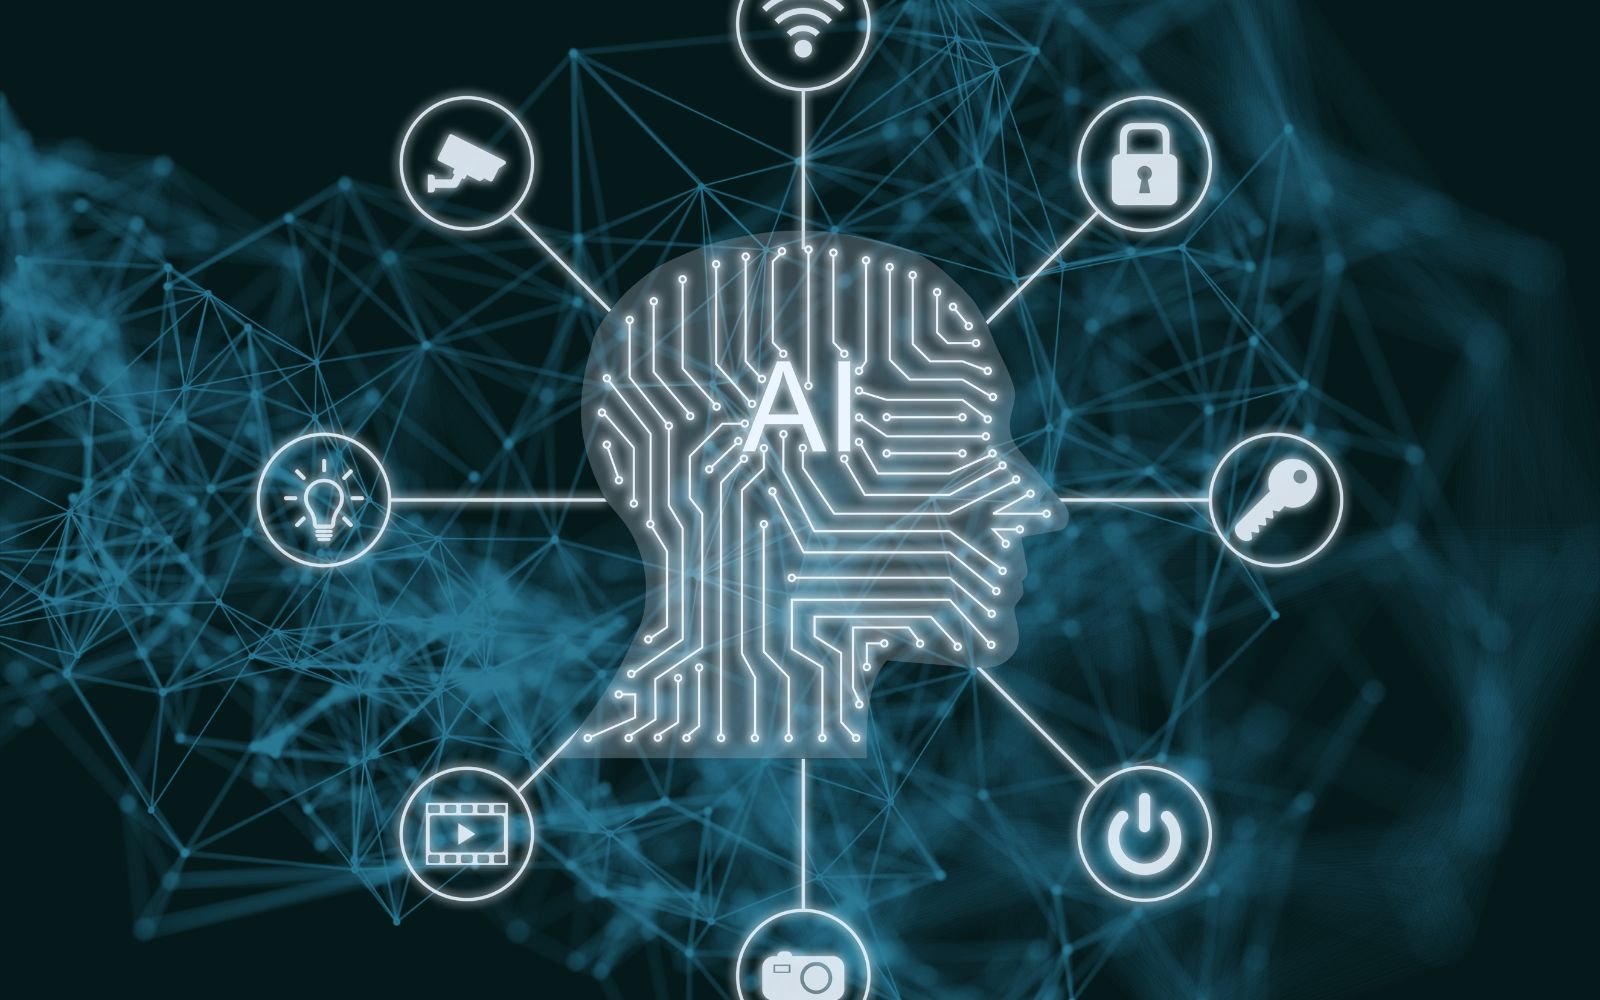 Illustration conceptuelle de l'intelligence artificielle avec un profil de tête humaine en circuit imprimé relié à diverses icônes de technologie, symbolisant les services de création de site web en Guadeloupe